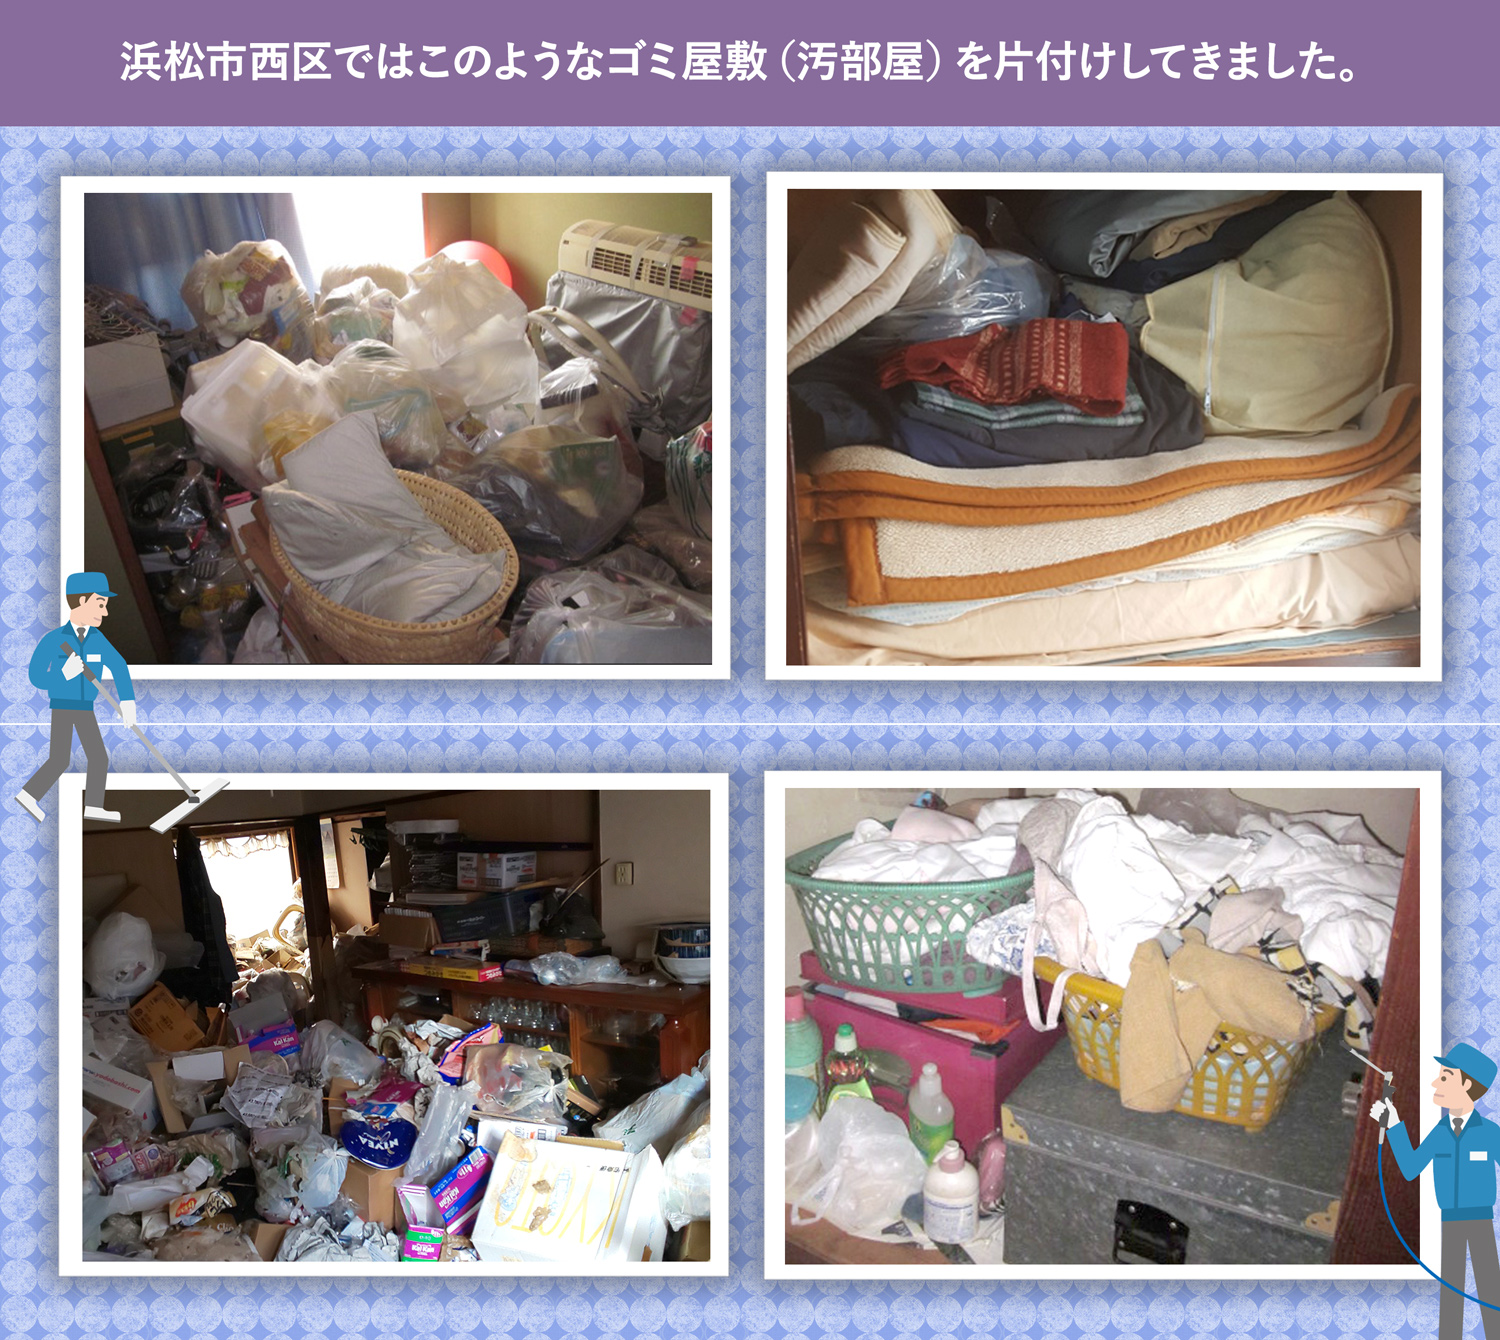 浜松市西区で行ったで行ったごみ屋敷・汚部屋の片付けの一例